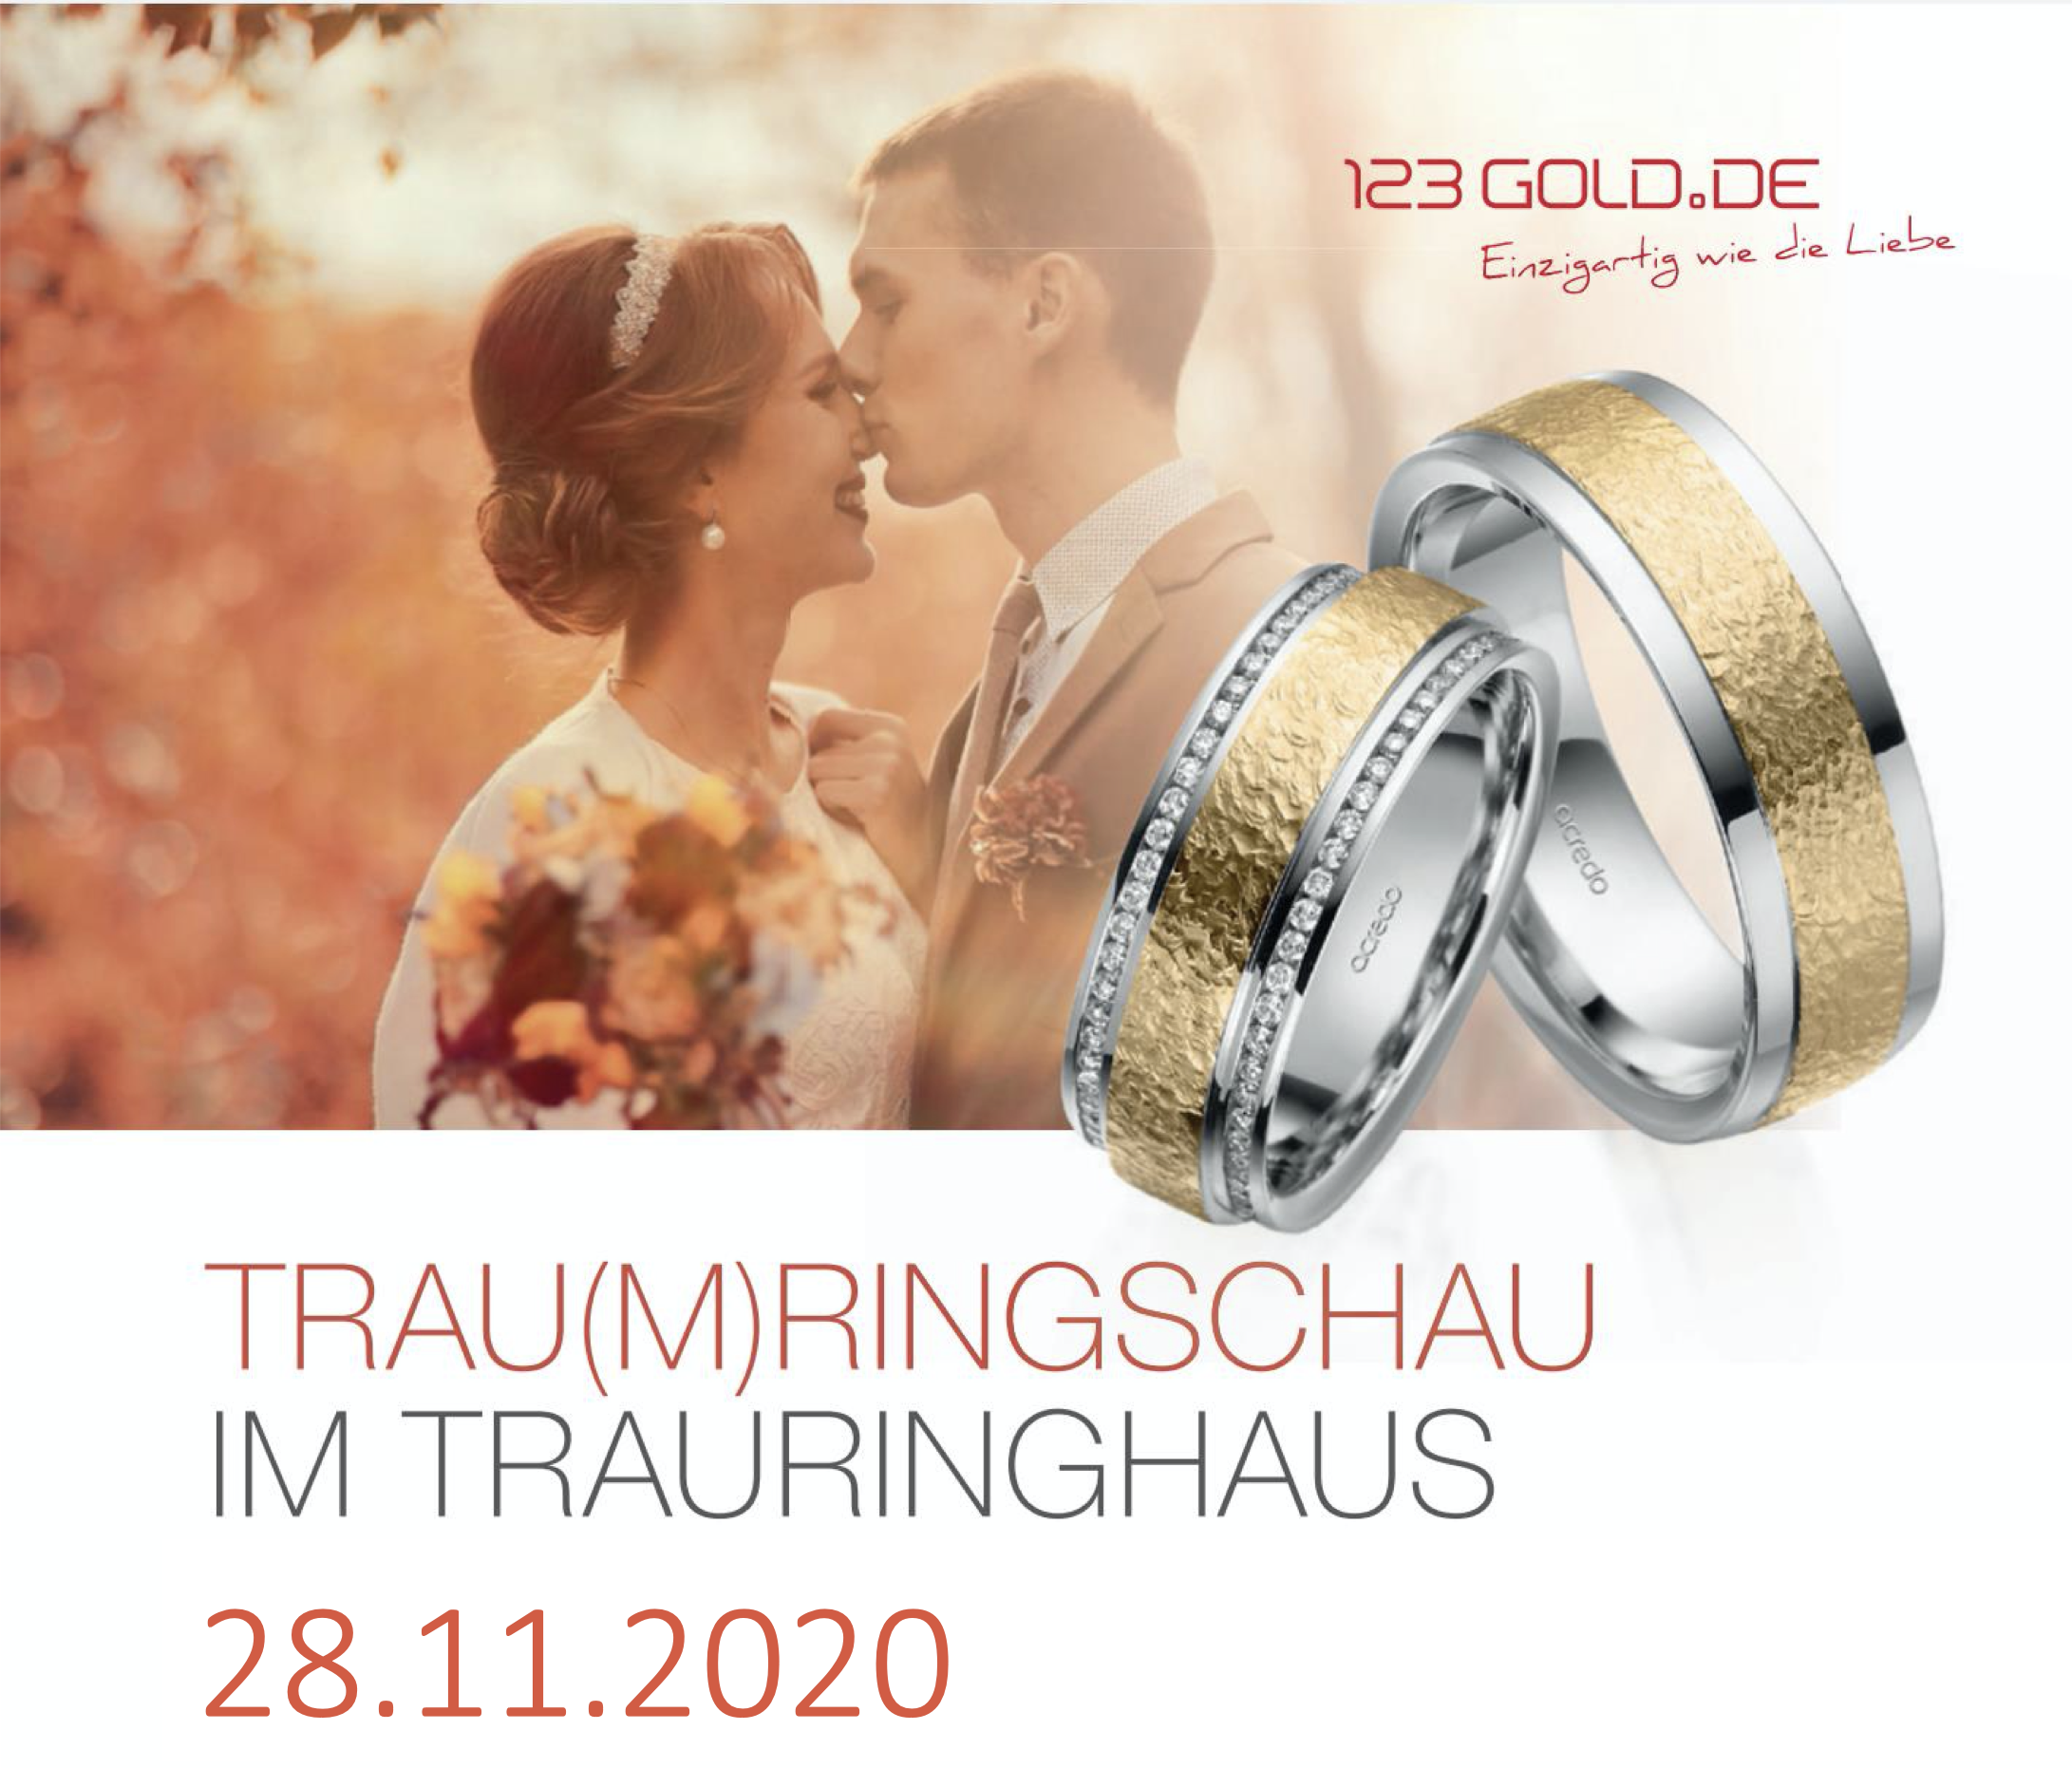 Hochzeitsmesse, Leipziger Landhochzeit, Hausmesse, Trauringhaus, Eheringe, Trauringe, Verlobungsringe, Rabatt, Brautpaar, 123gold